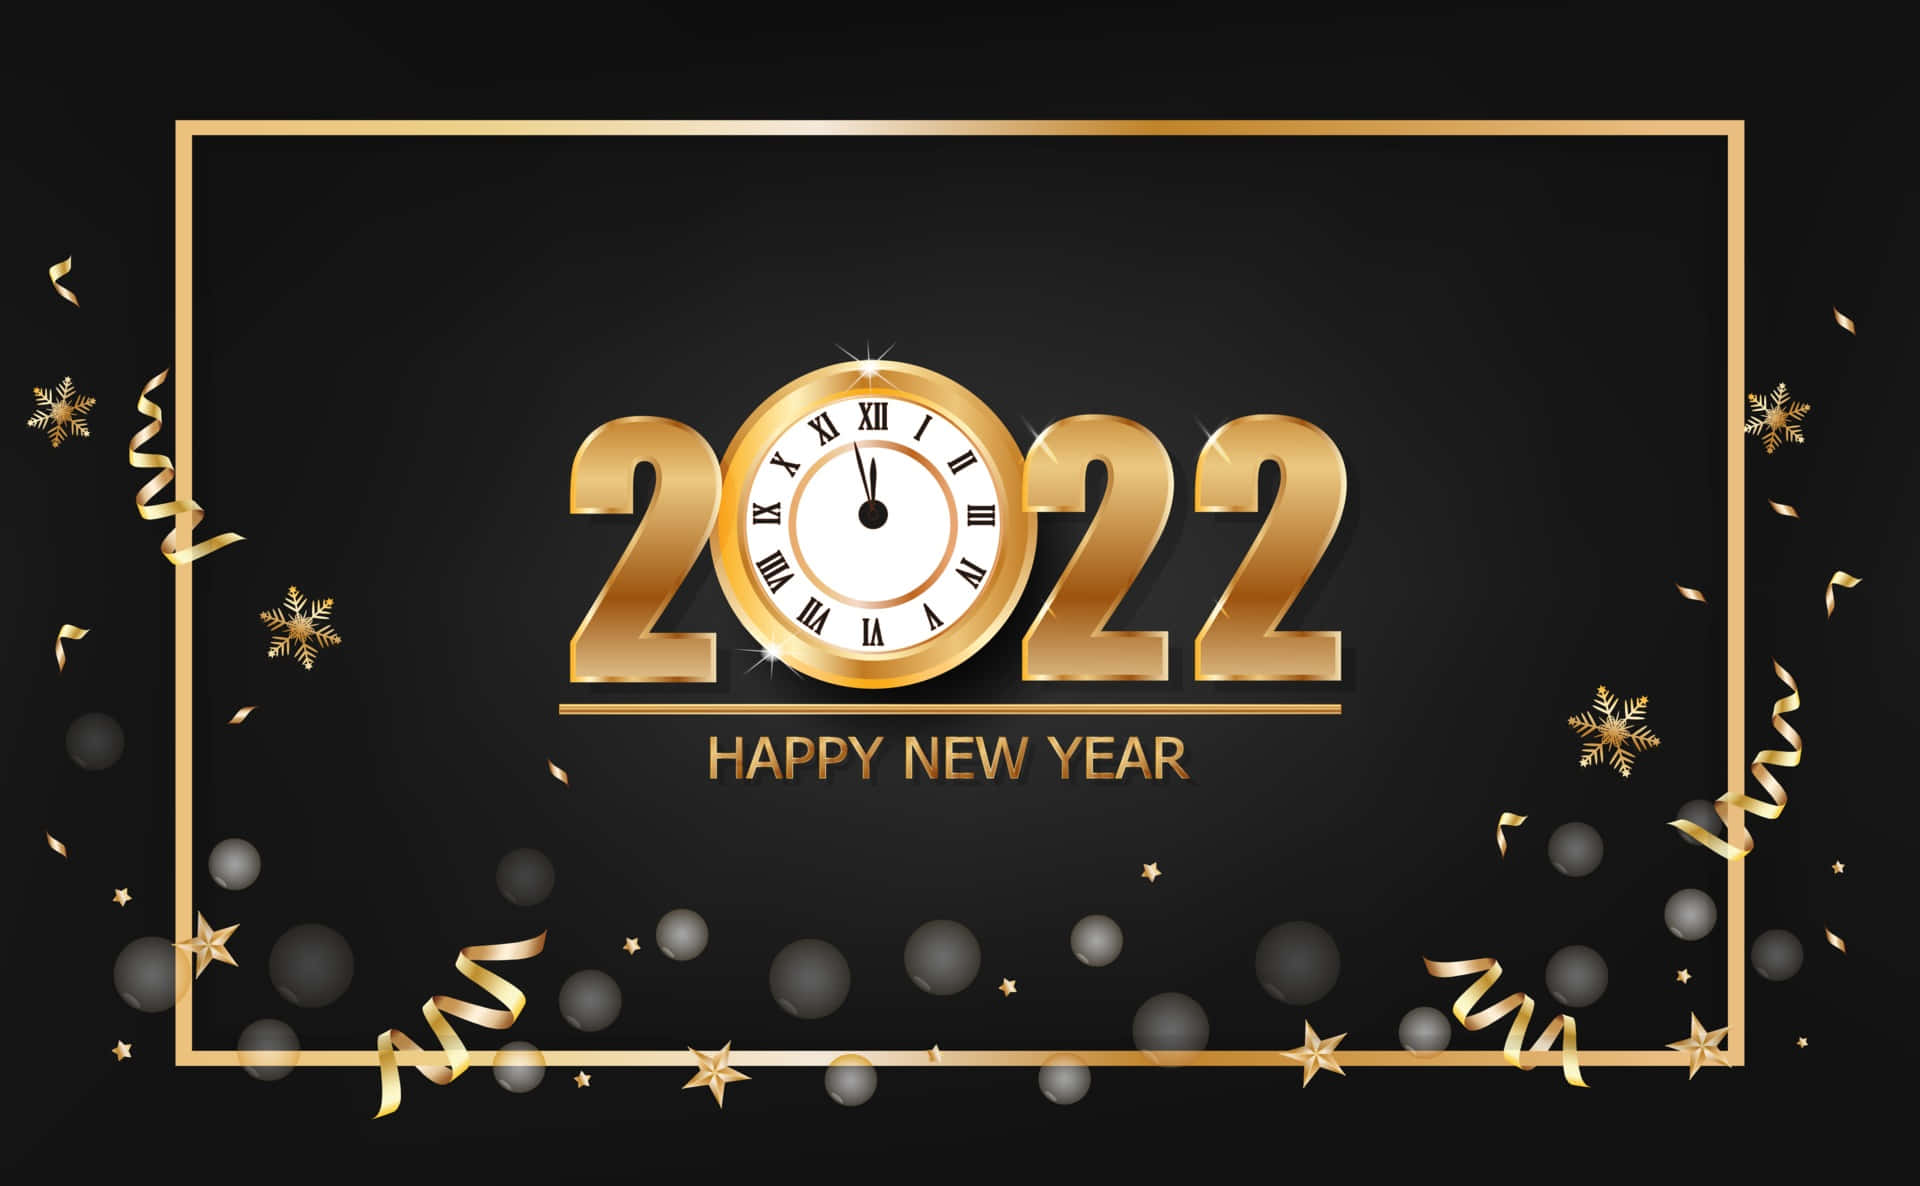 Tiauguro Un Felice Anno Nuovo 2022!